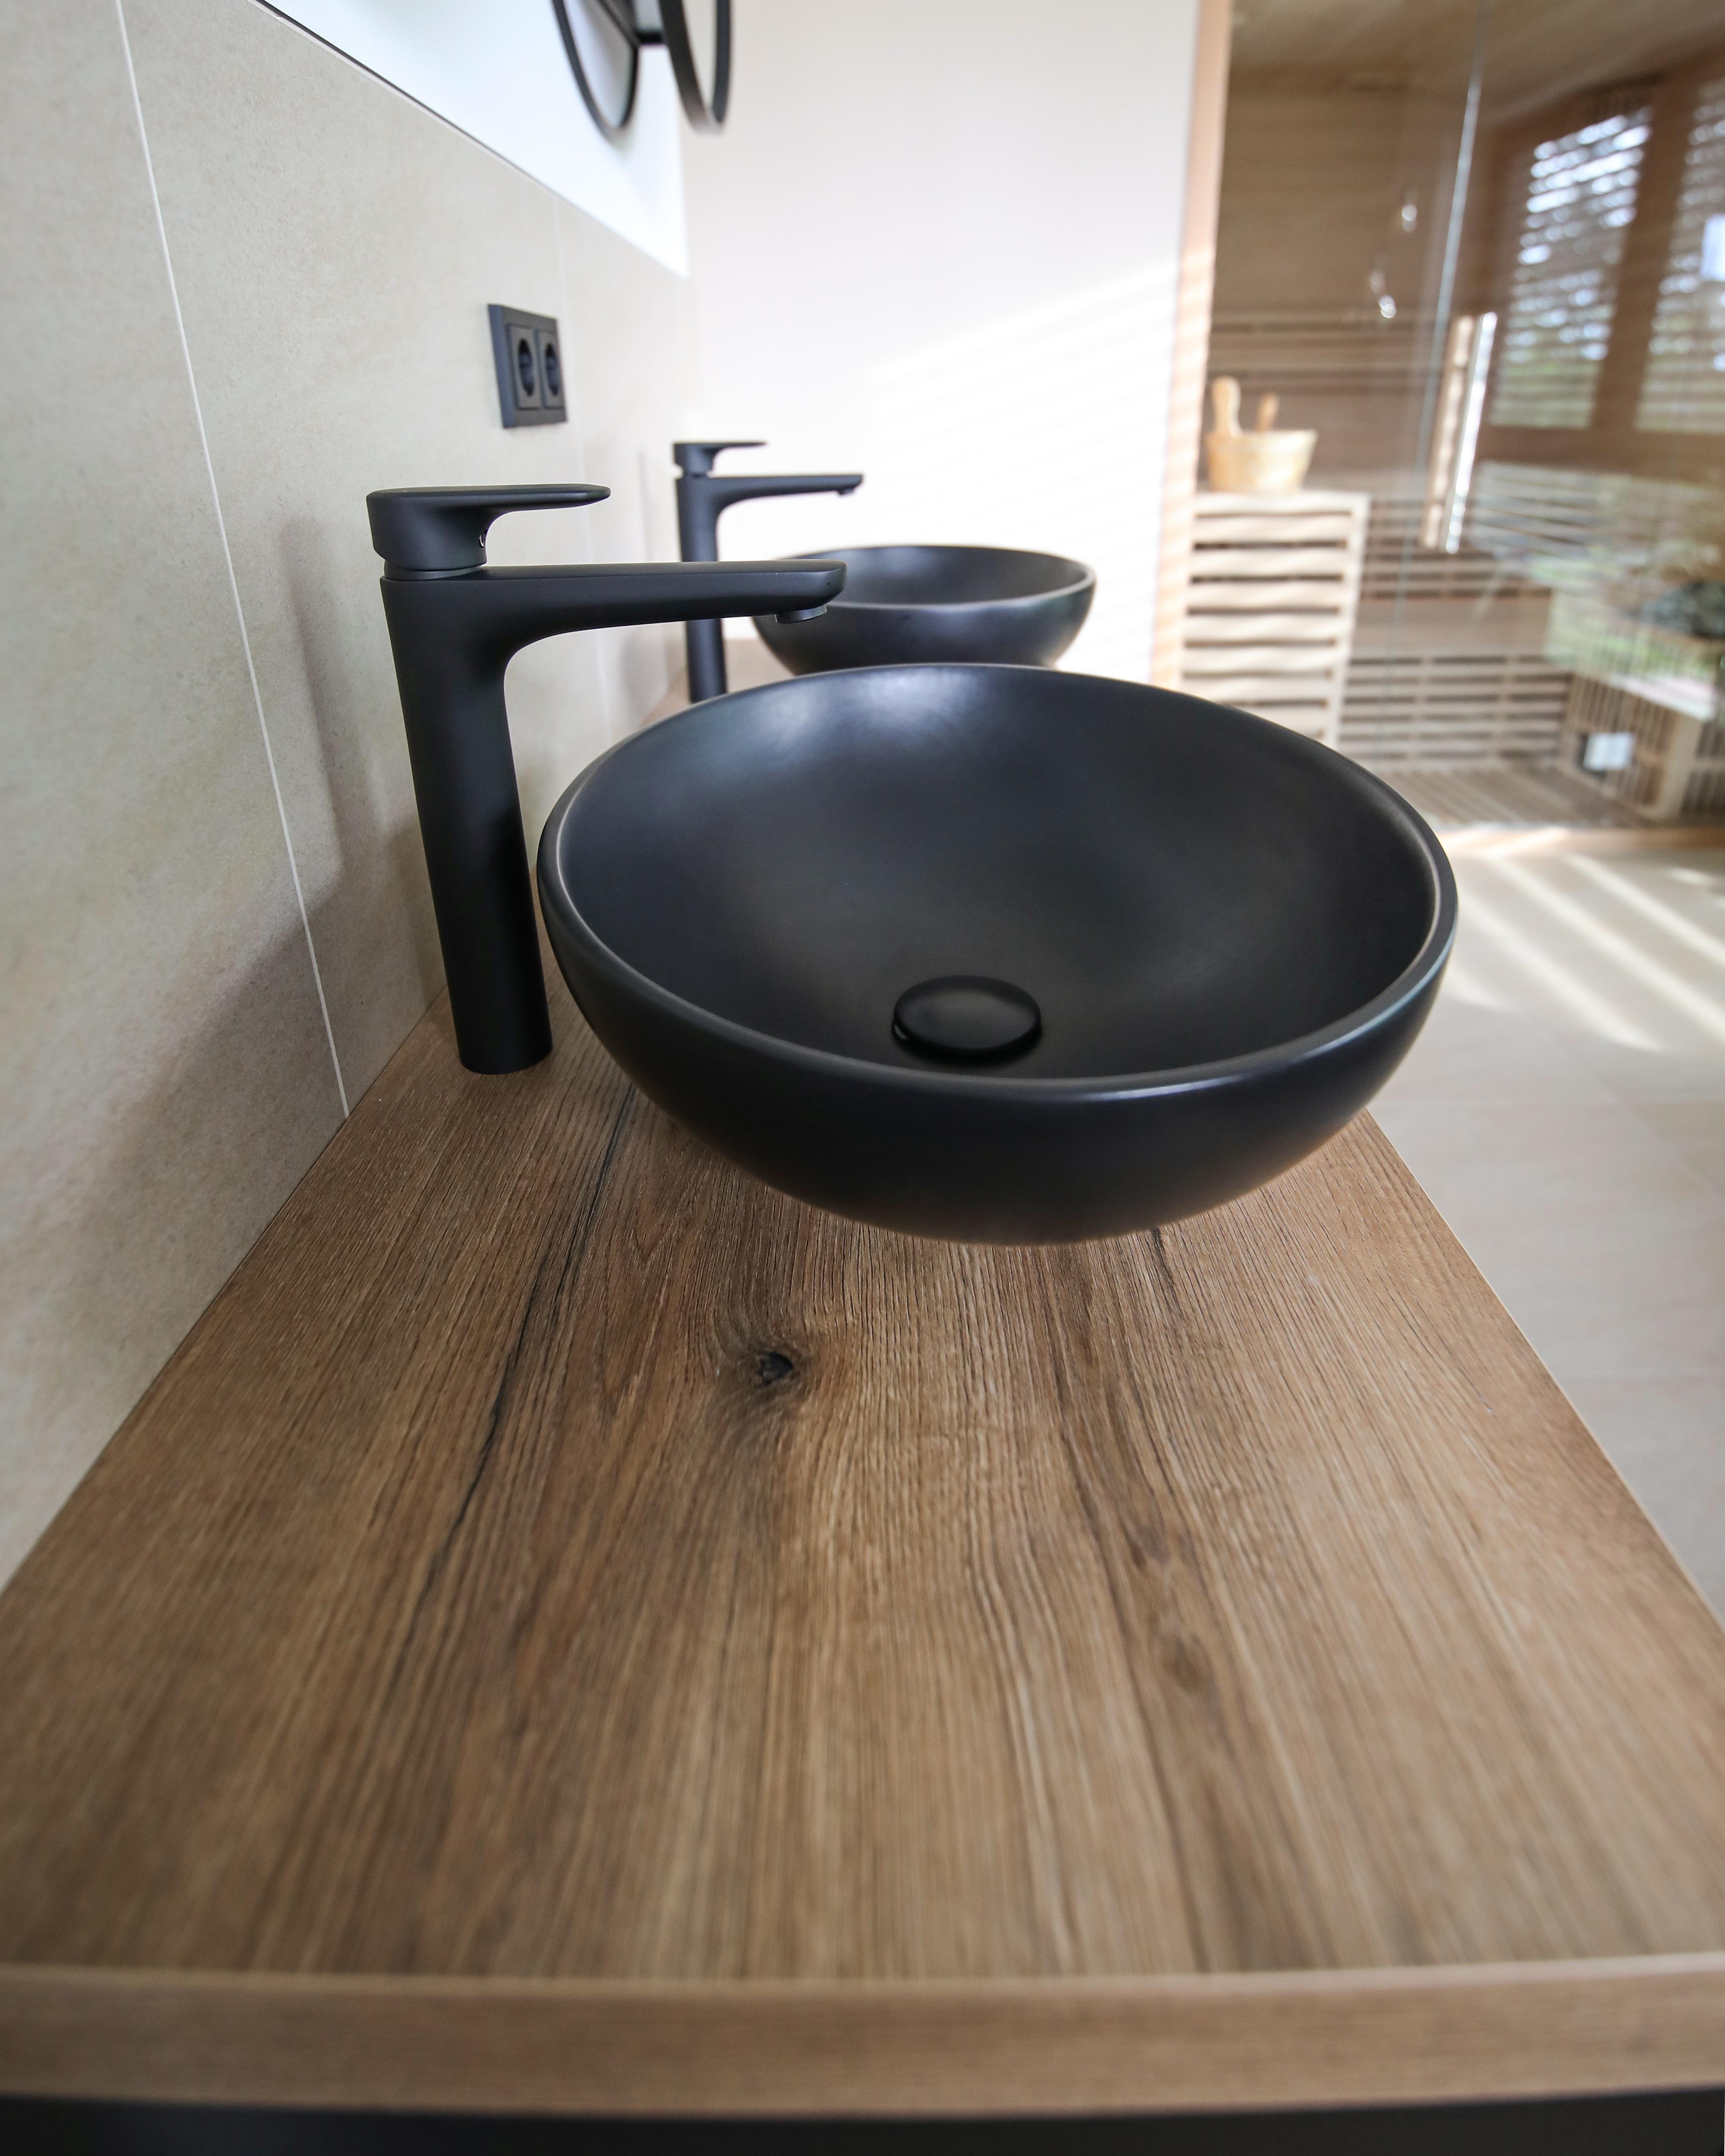 Waschtisch ☺️ #waschtisch #waschtisch #schwarz #industrial #badezimmer #sauna 